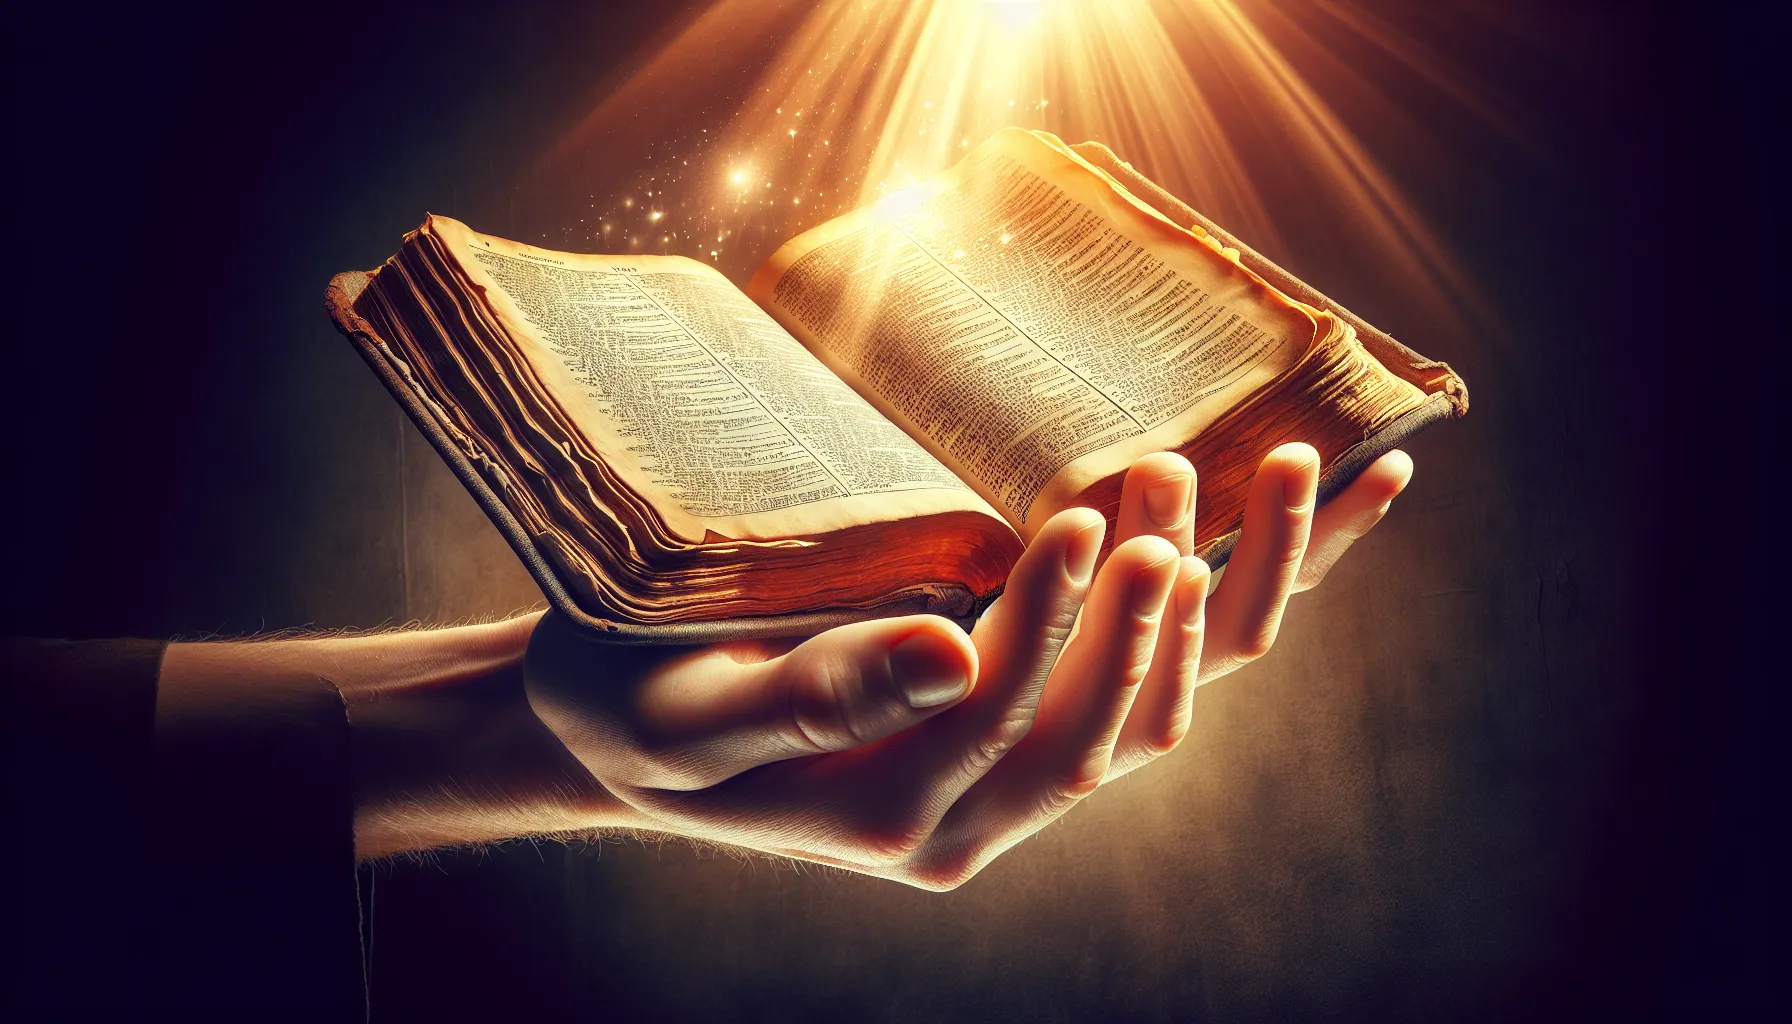 Imagen de una mano sosteniendo una antigua Biblia abierta con una luz divina brillando sobre las páginas